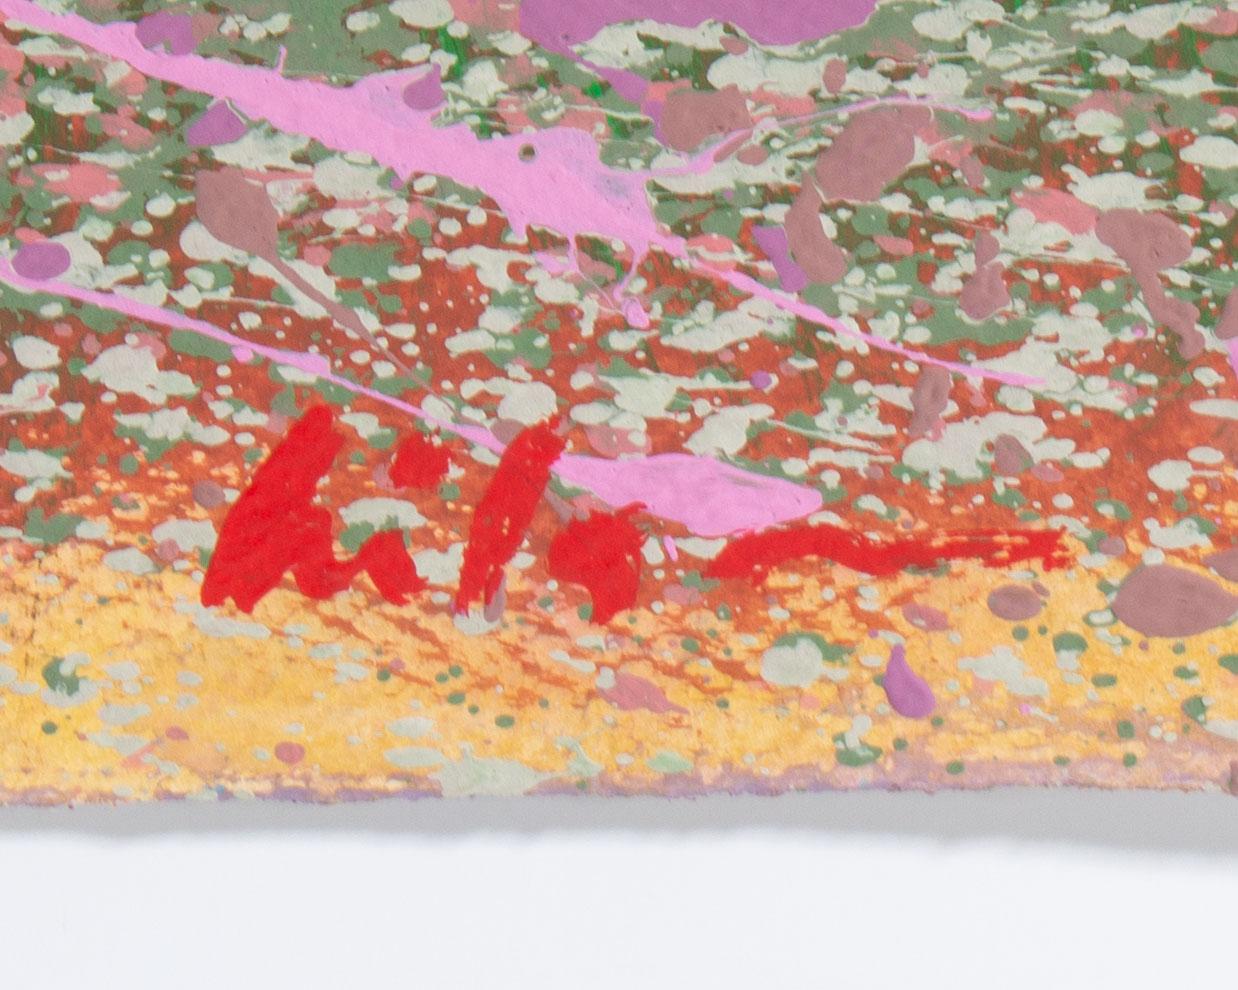 Ein abstraktes Landschaftsgemälde des amerikanischen Künstlers Harry Hilson (1935-2004) in Acryl auf Papier. Gestische Linien fügen sich zu einer stimmungsvollen abstrakten Landschaft mit Bergen im Hintergrund und blühenden rosa Feldern im